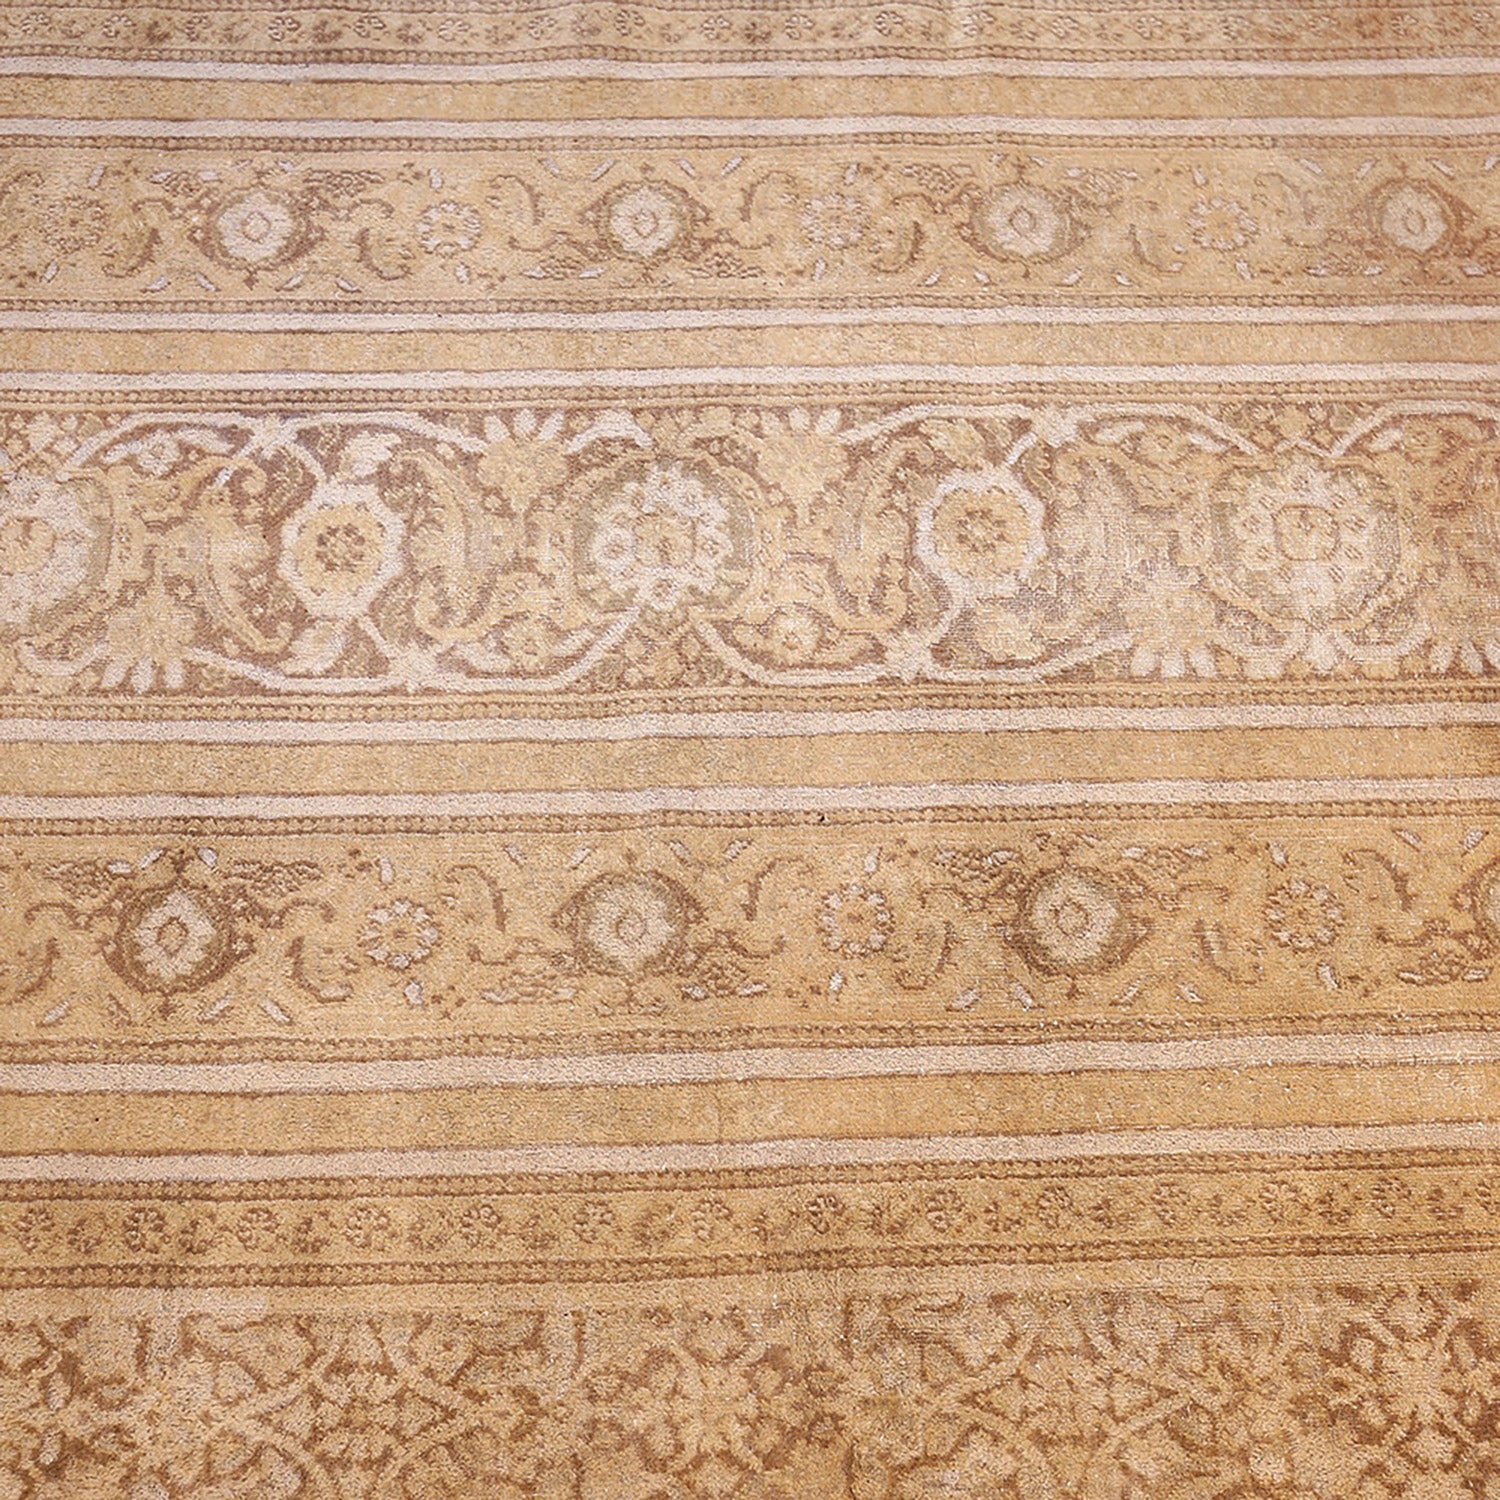 Large Antique Persian Tabriz Carpet - 13'7" x 16'7" Default Title